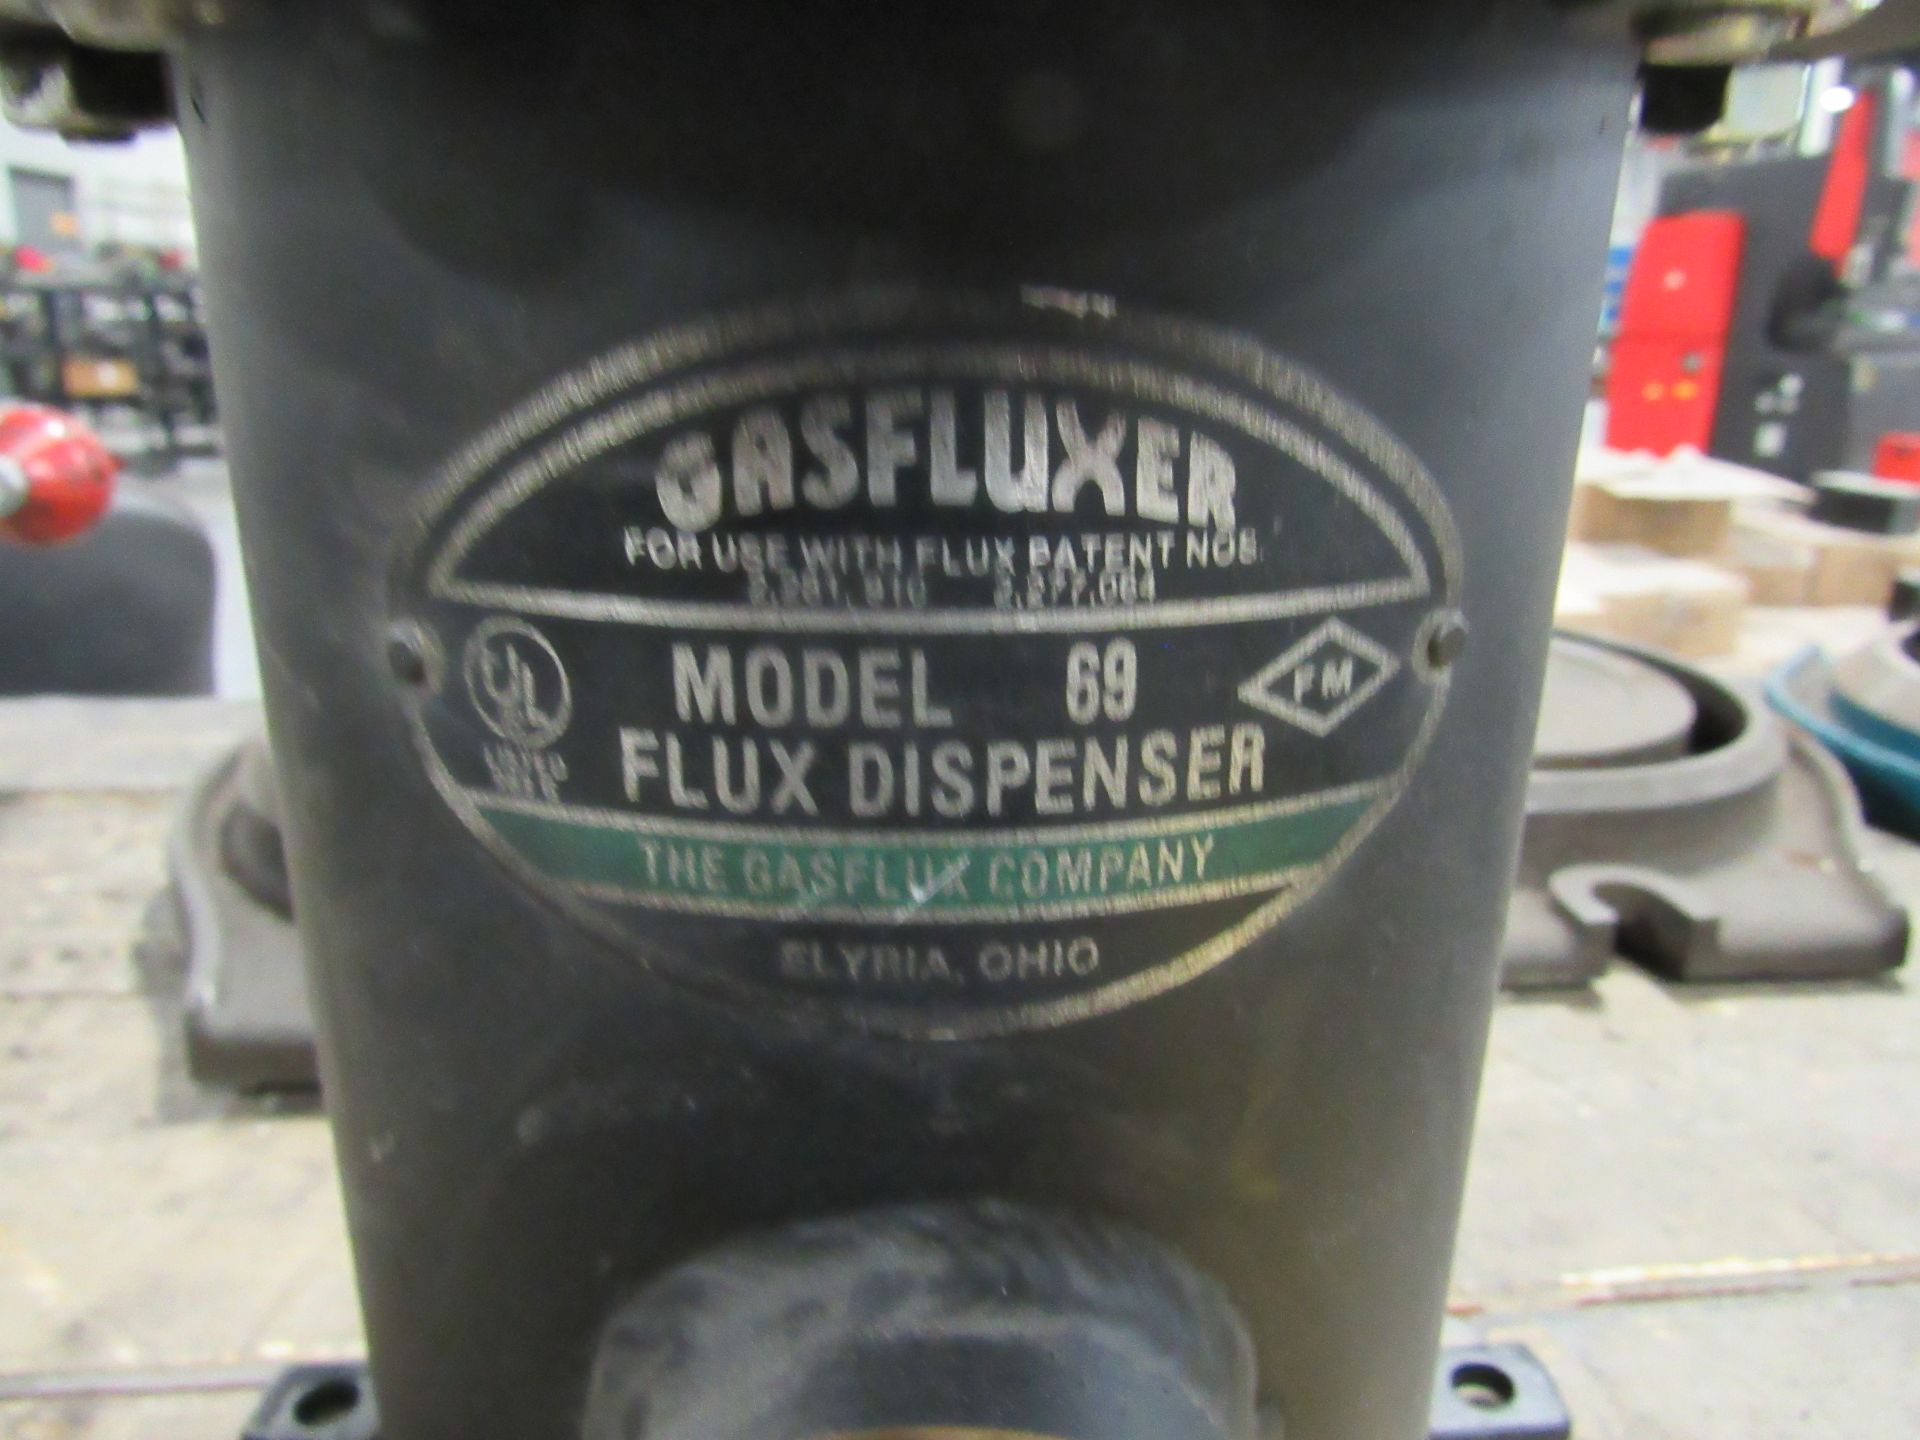 Gasfluxer Model 69 Flux Dispenser - Image 2 of 3